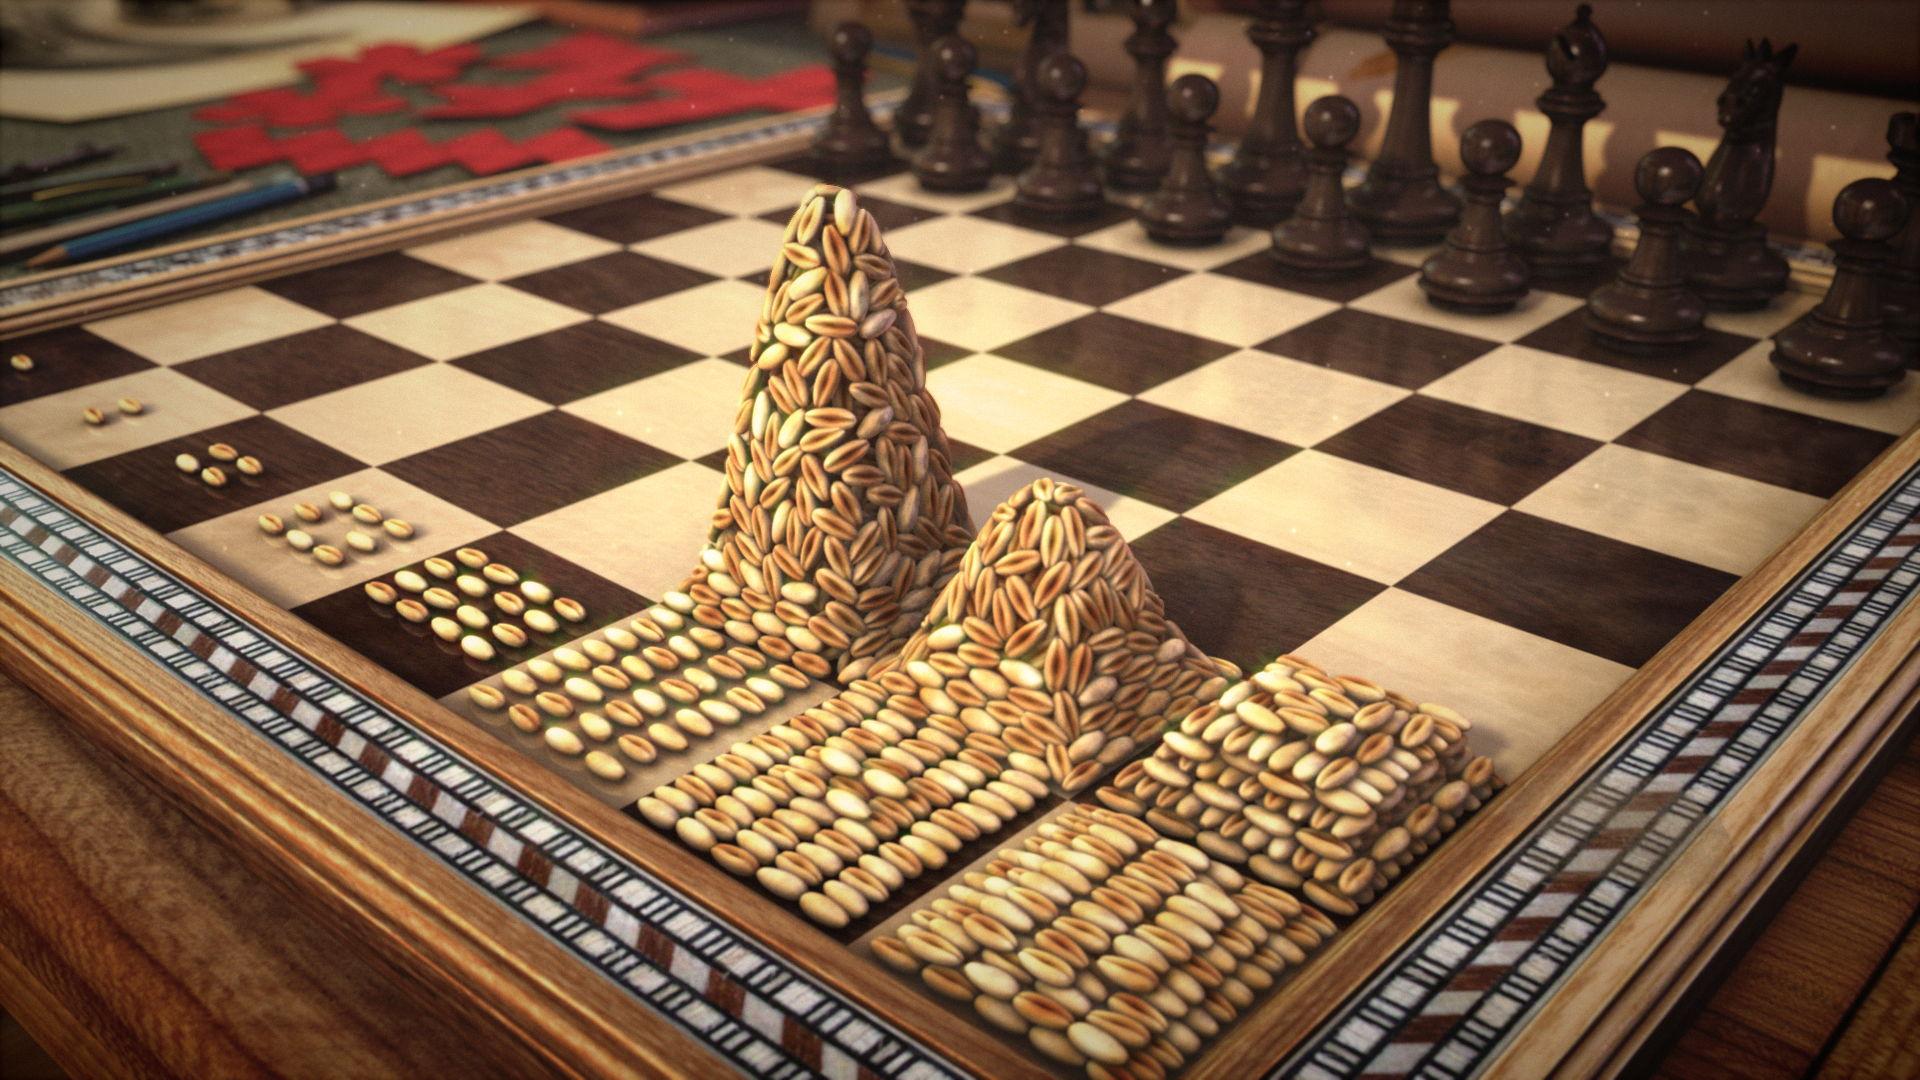 Легенды о шахматах